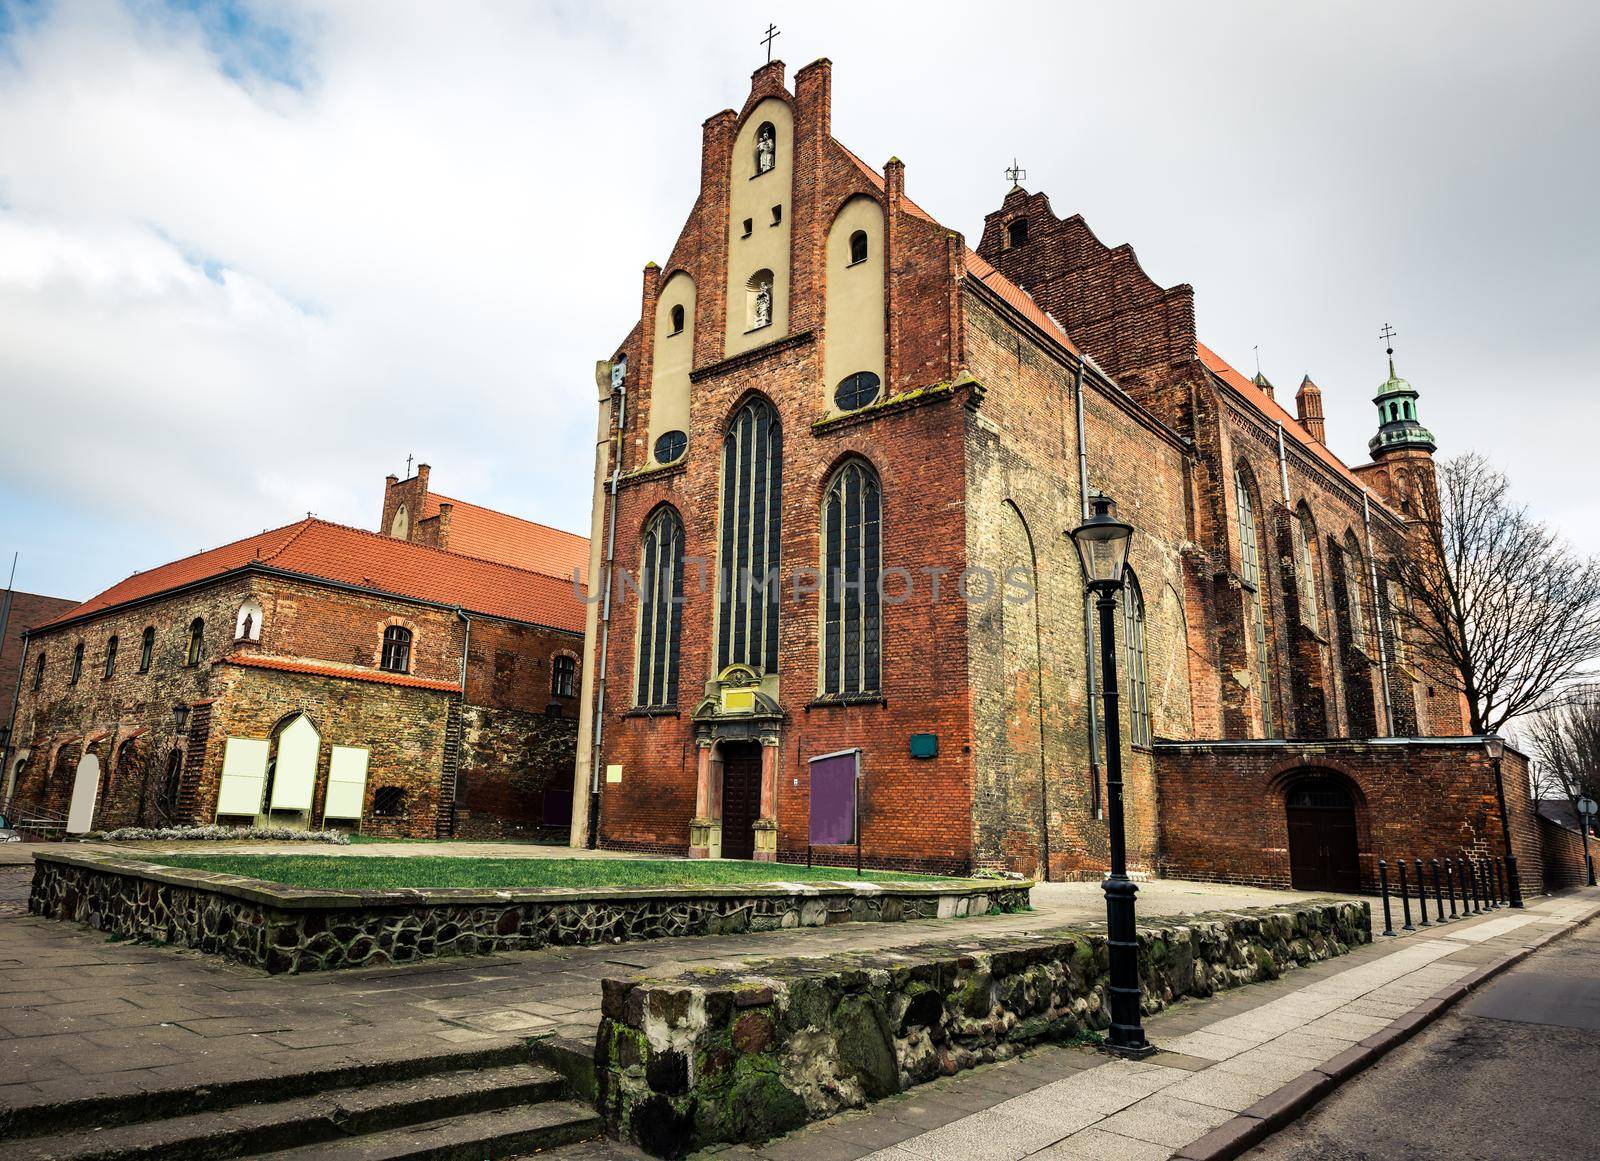 Historical Old Town of Gdansk by GekaSkr